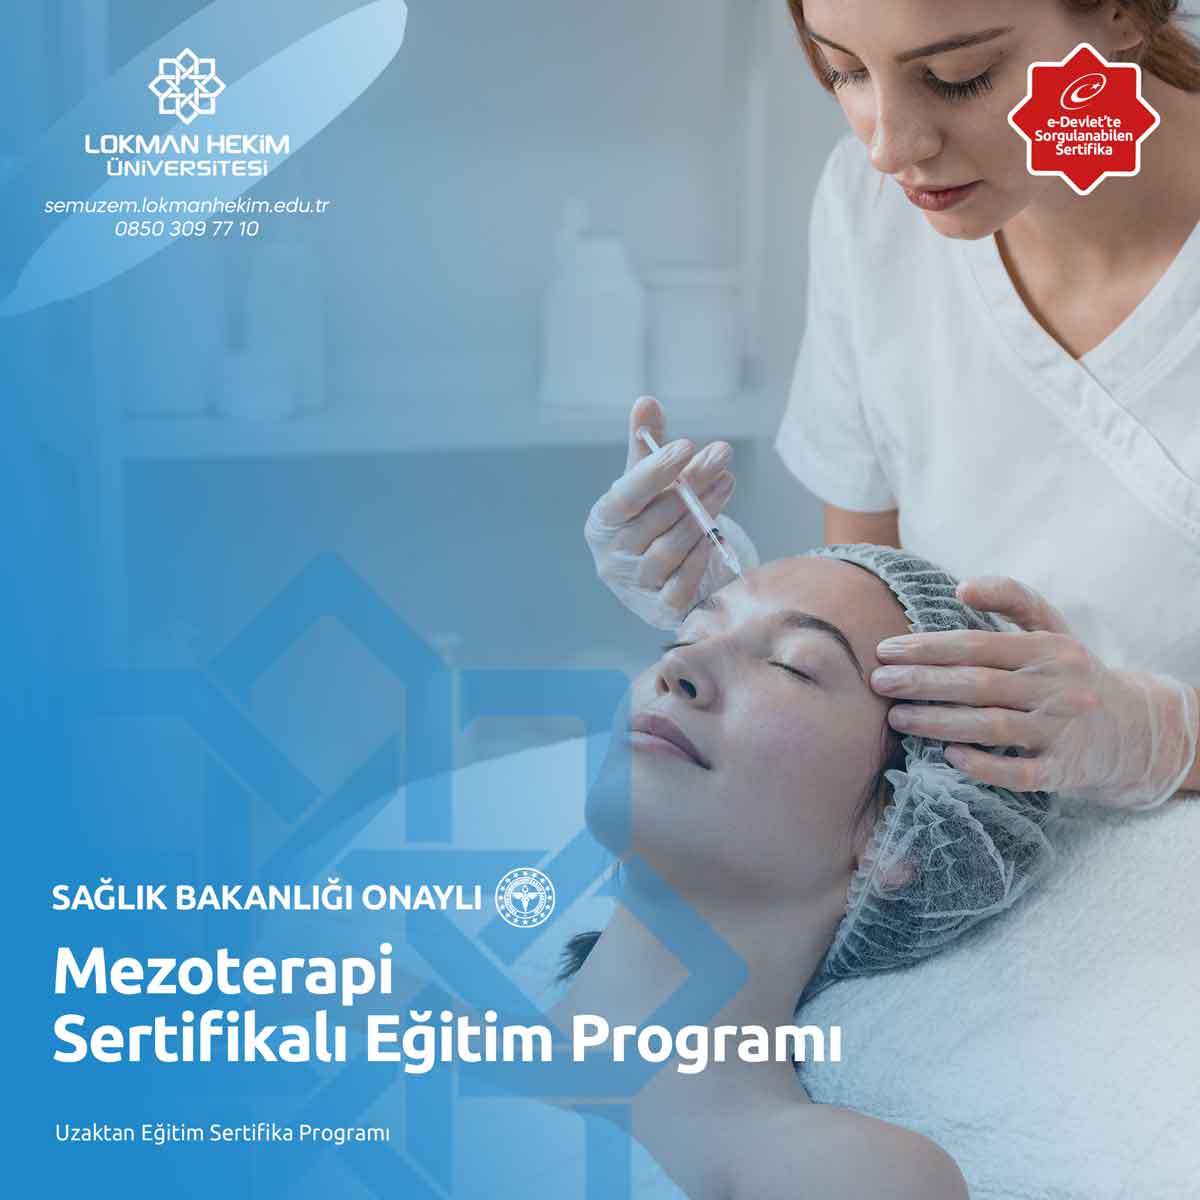 Mezoterapi Sertifikalı Eğitim Programı